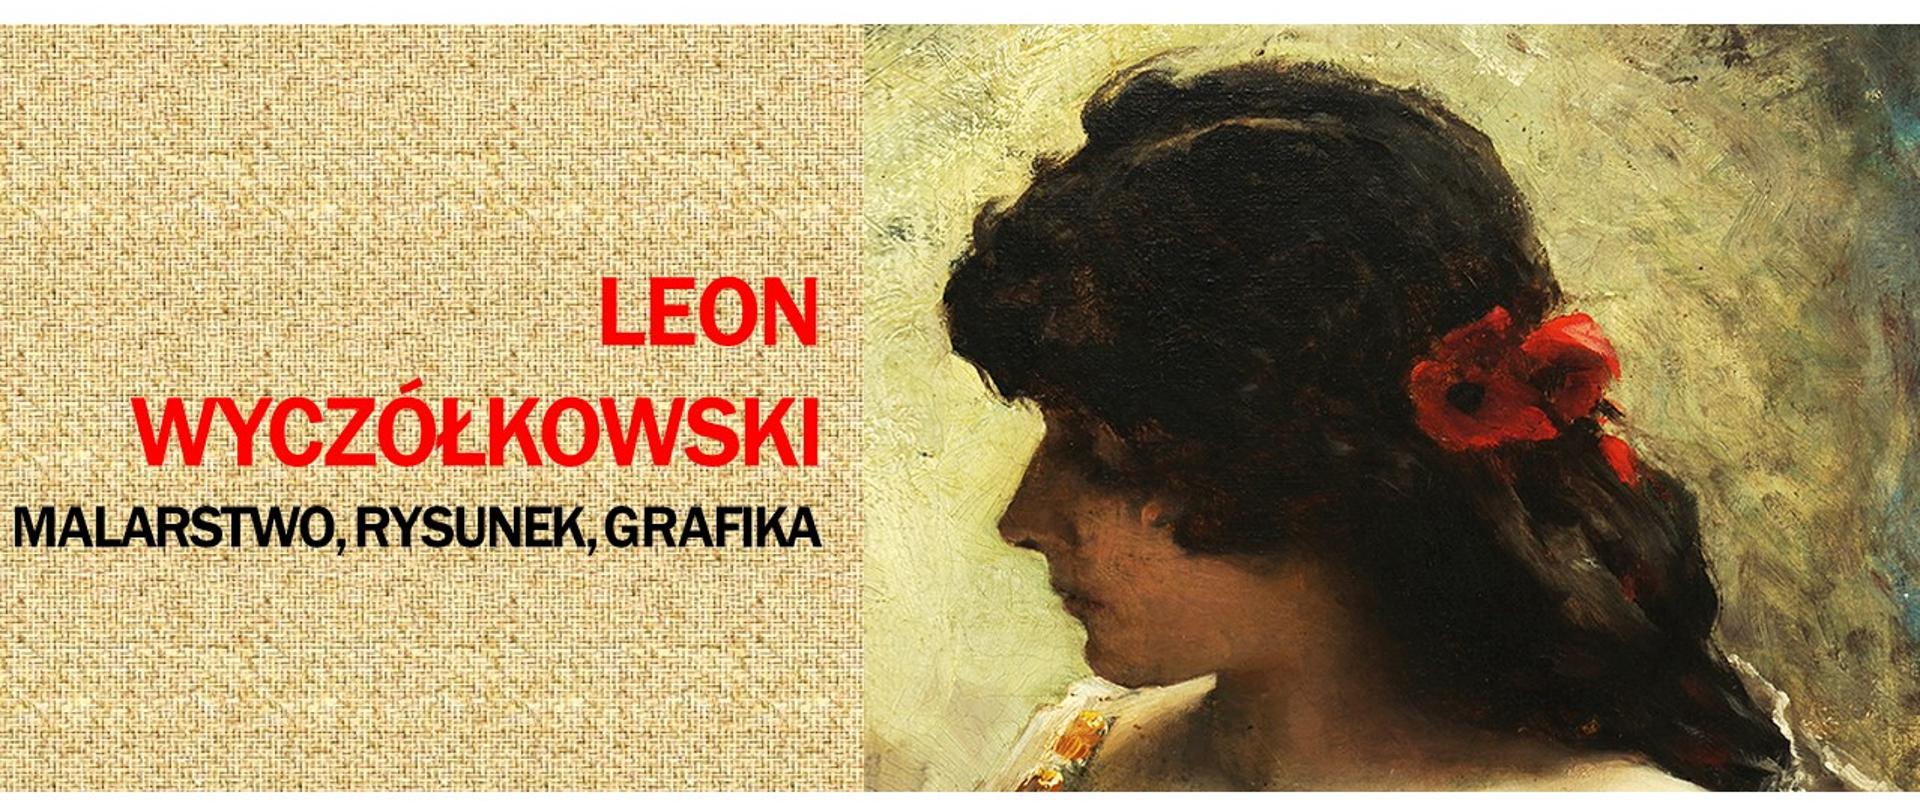 Leon Wyczółkowski- Malarstwo, Rysunek, Grafika